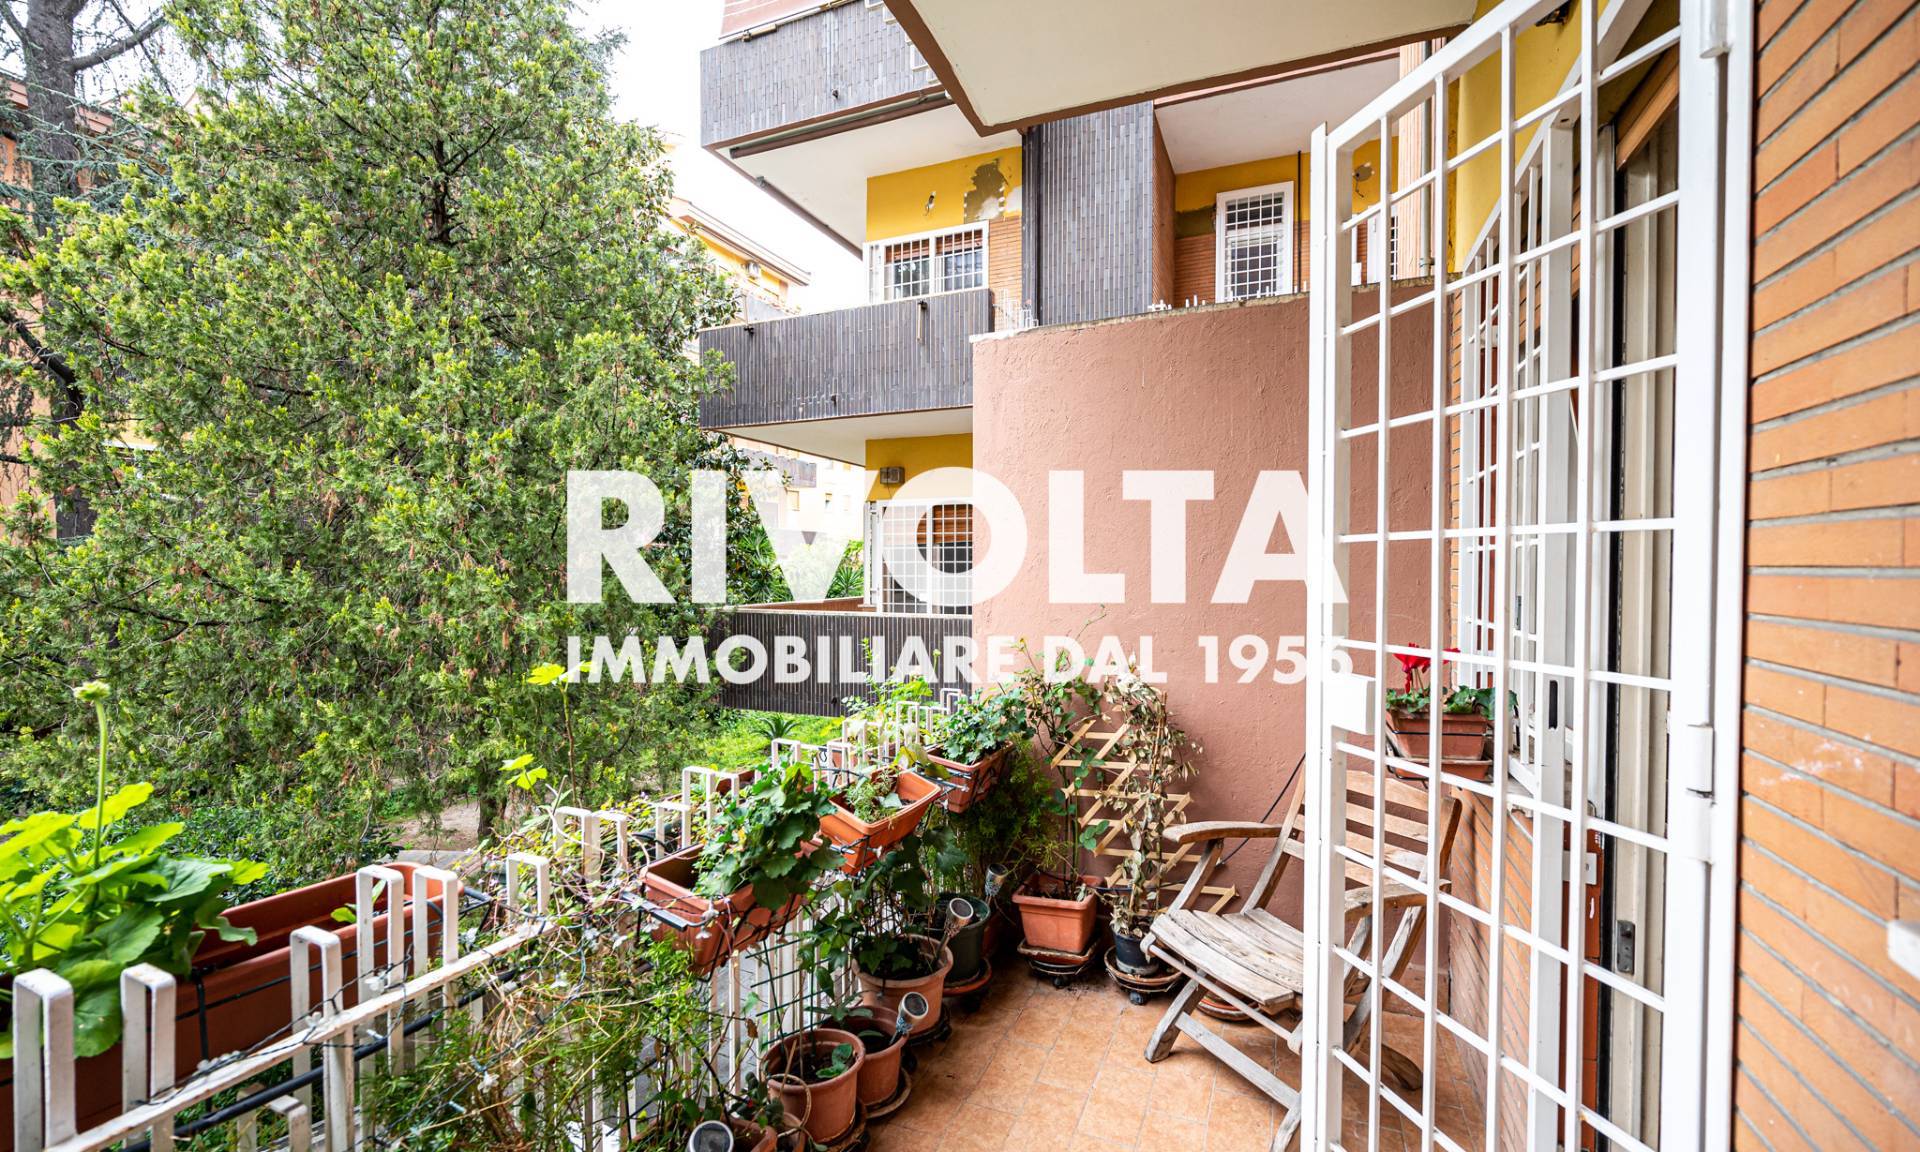 Appartamento in vendita a Roma, 1 locali, prezzo € 189.000 | CambioCasa.it